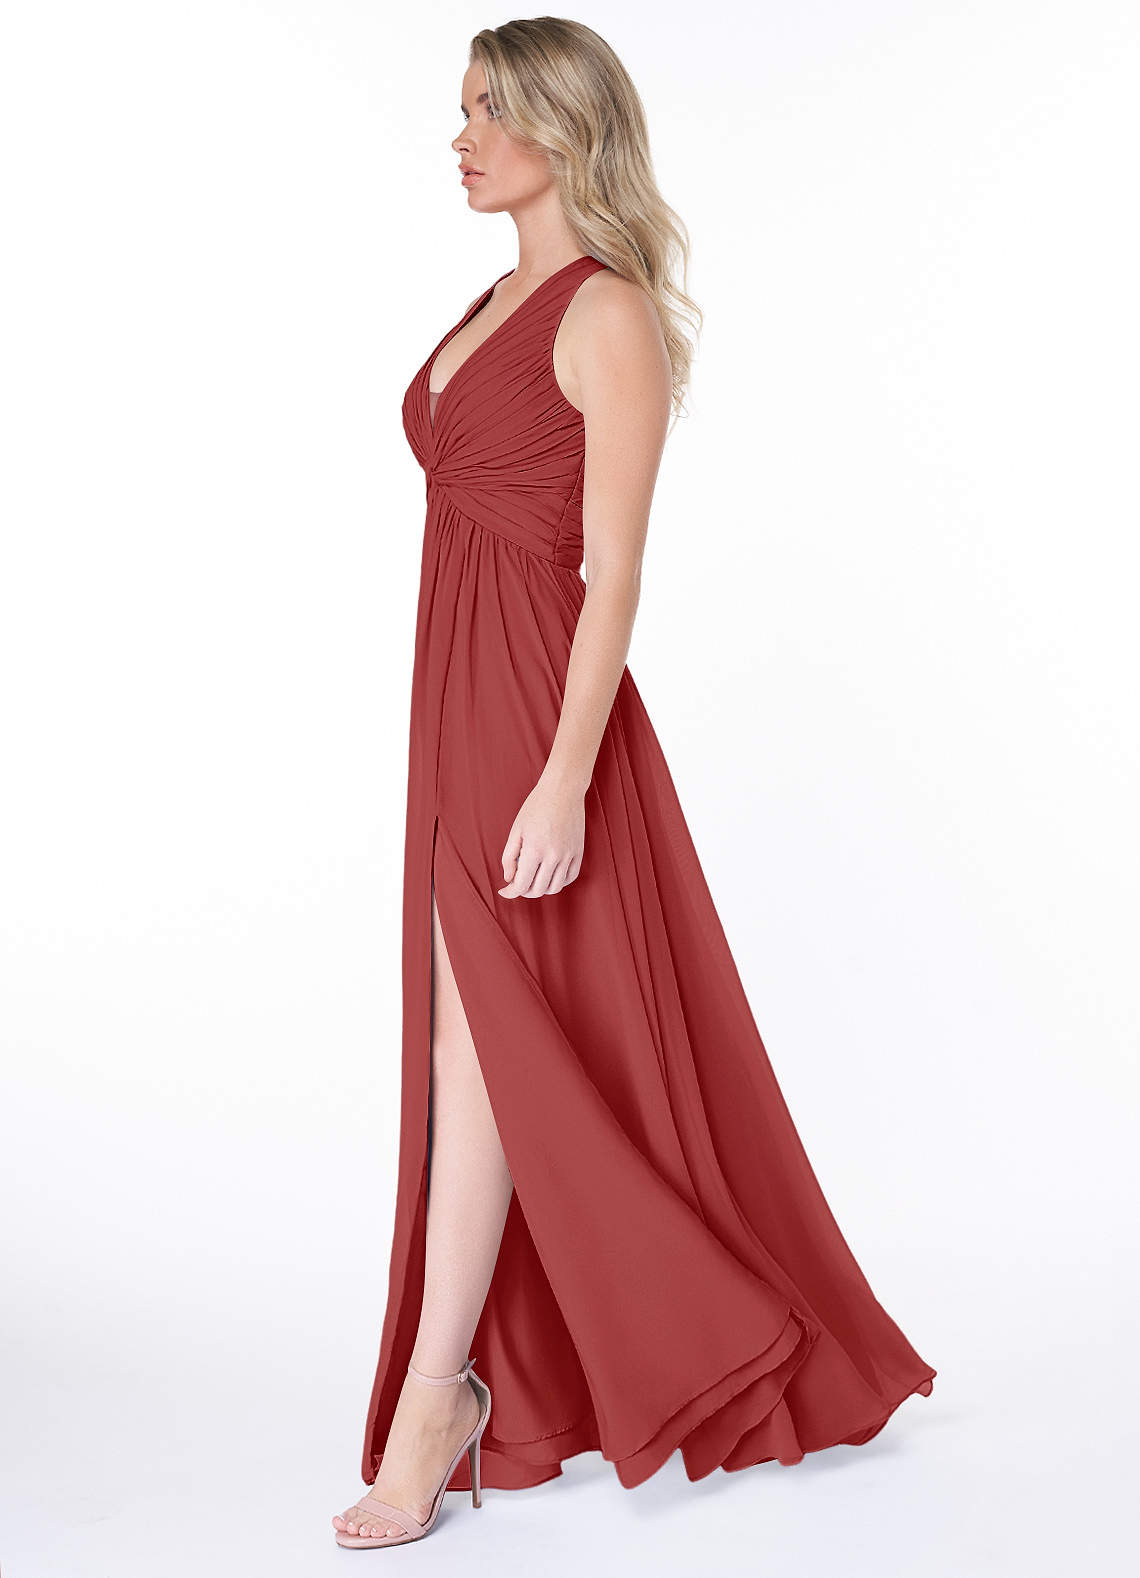 Azazie Jaclyn Bridesmaid Dresses A-Line Pleated Chiffon Floor-Length Dress image1